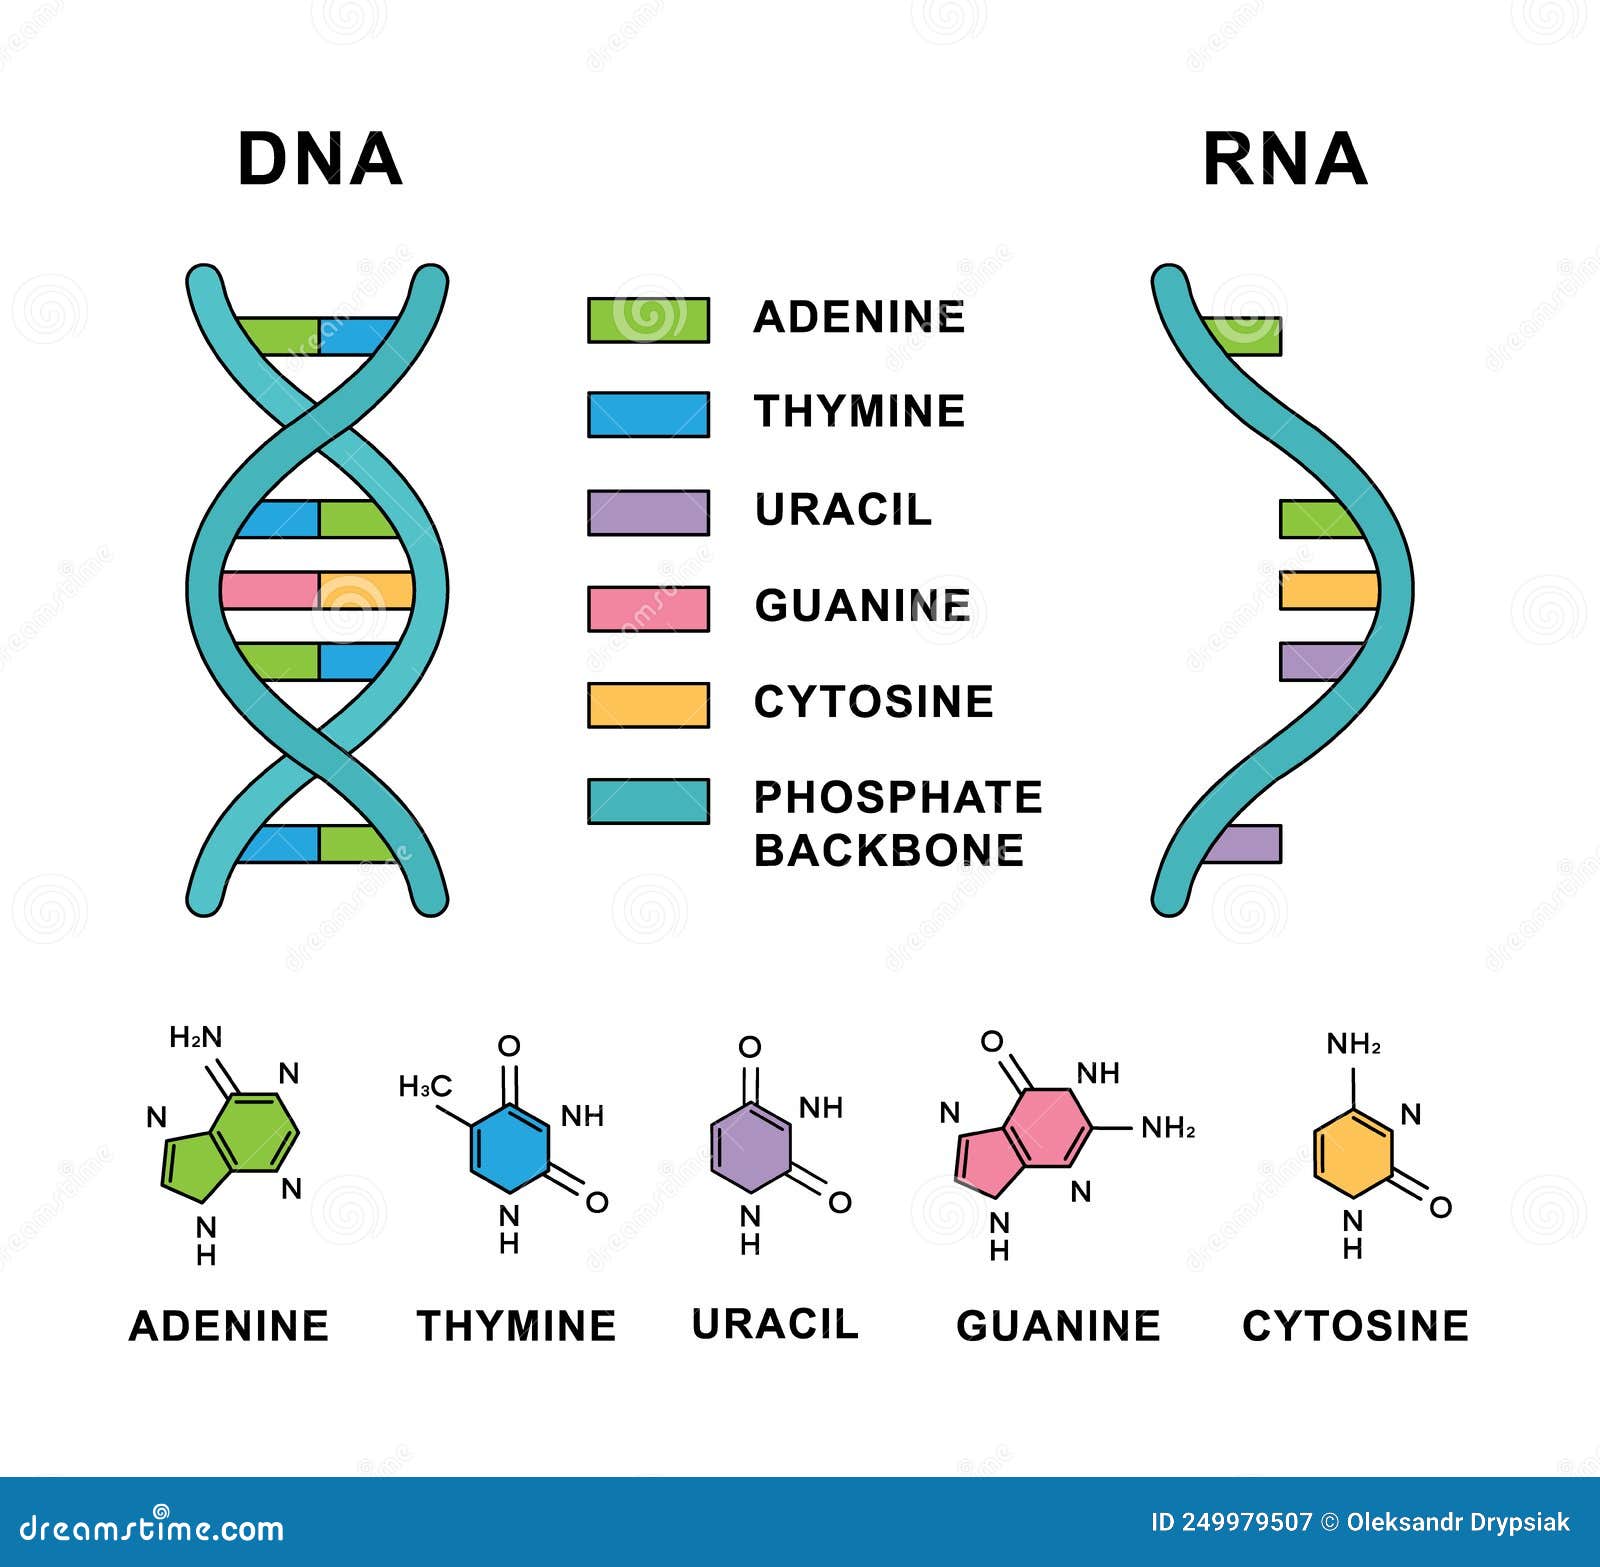 Рнк гуанин цитозин. Аденин гуанин цитозин Тимин урацил. РНК аденин урацил гуанин. Тимин гуанин цитозин Тимин РНК И ДНК. ДНК И РНК аденин Тимин гуанин цитозин урацил.